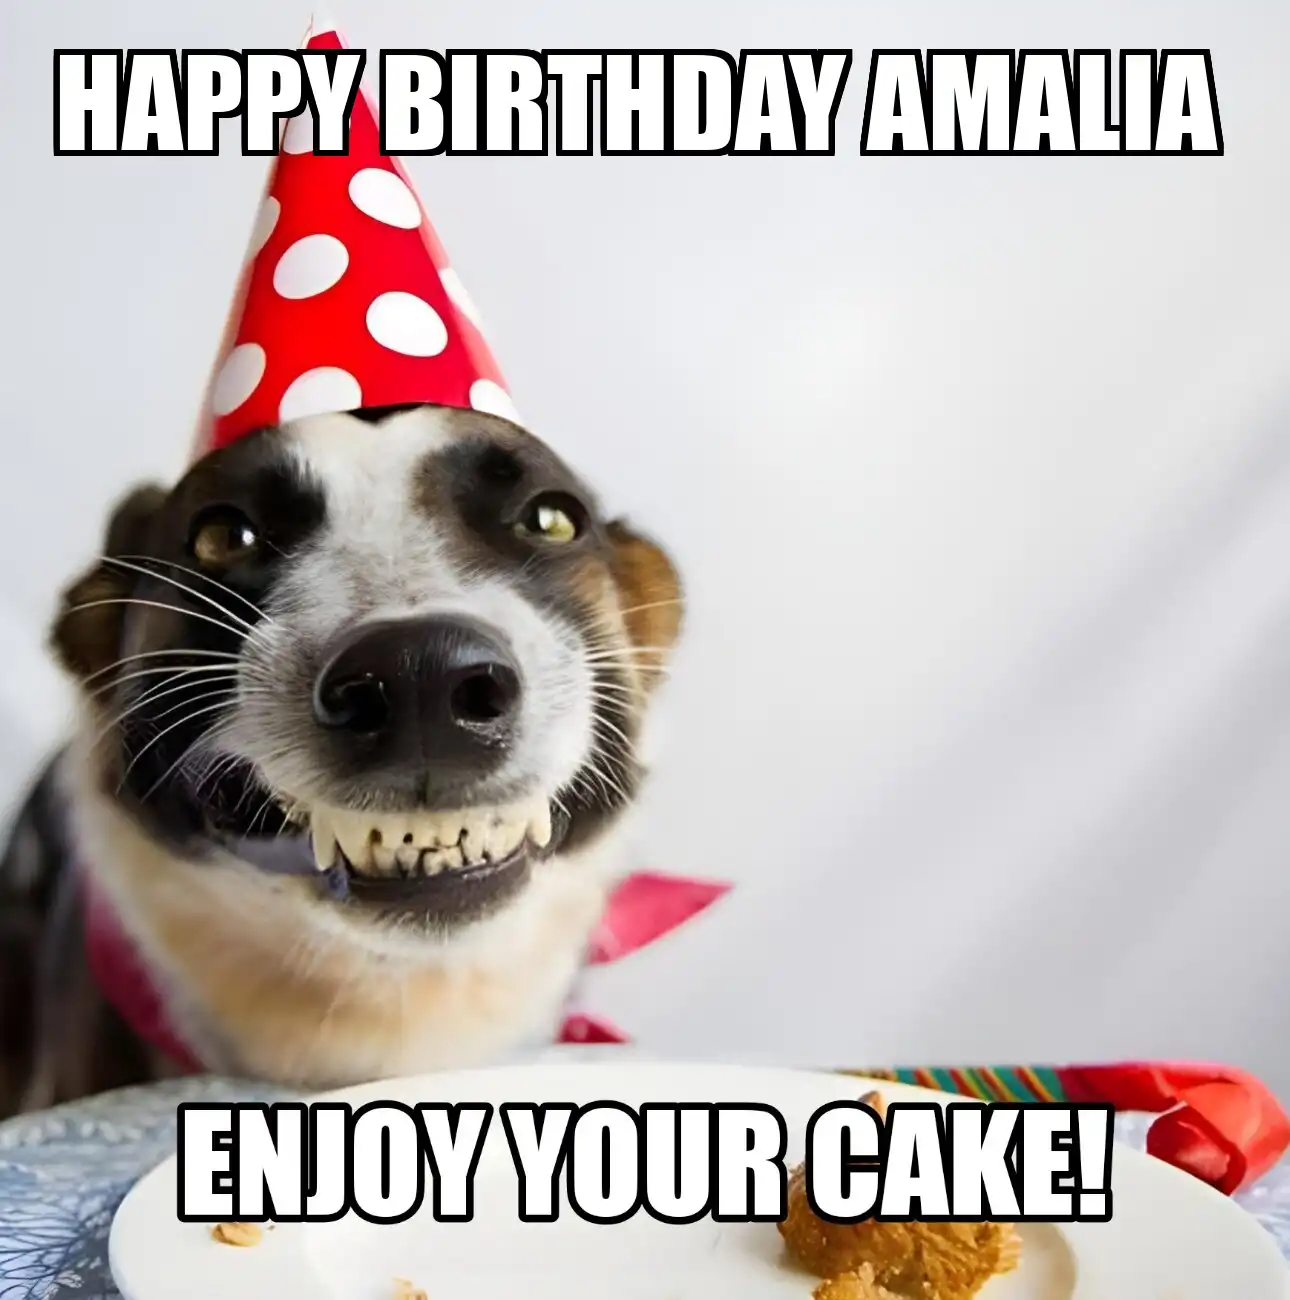 Happy Birthday Amalia Enjoy Your Cake Dog Meme